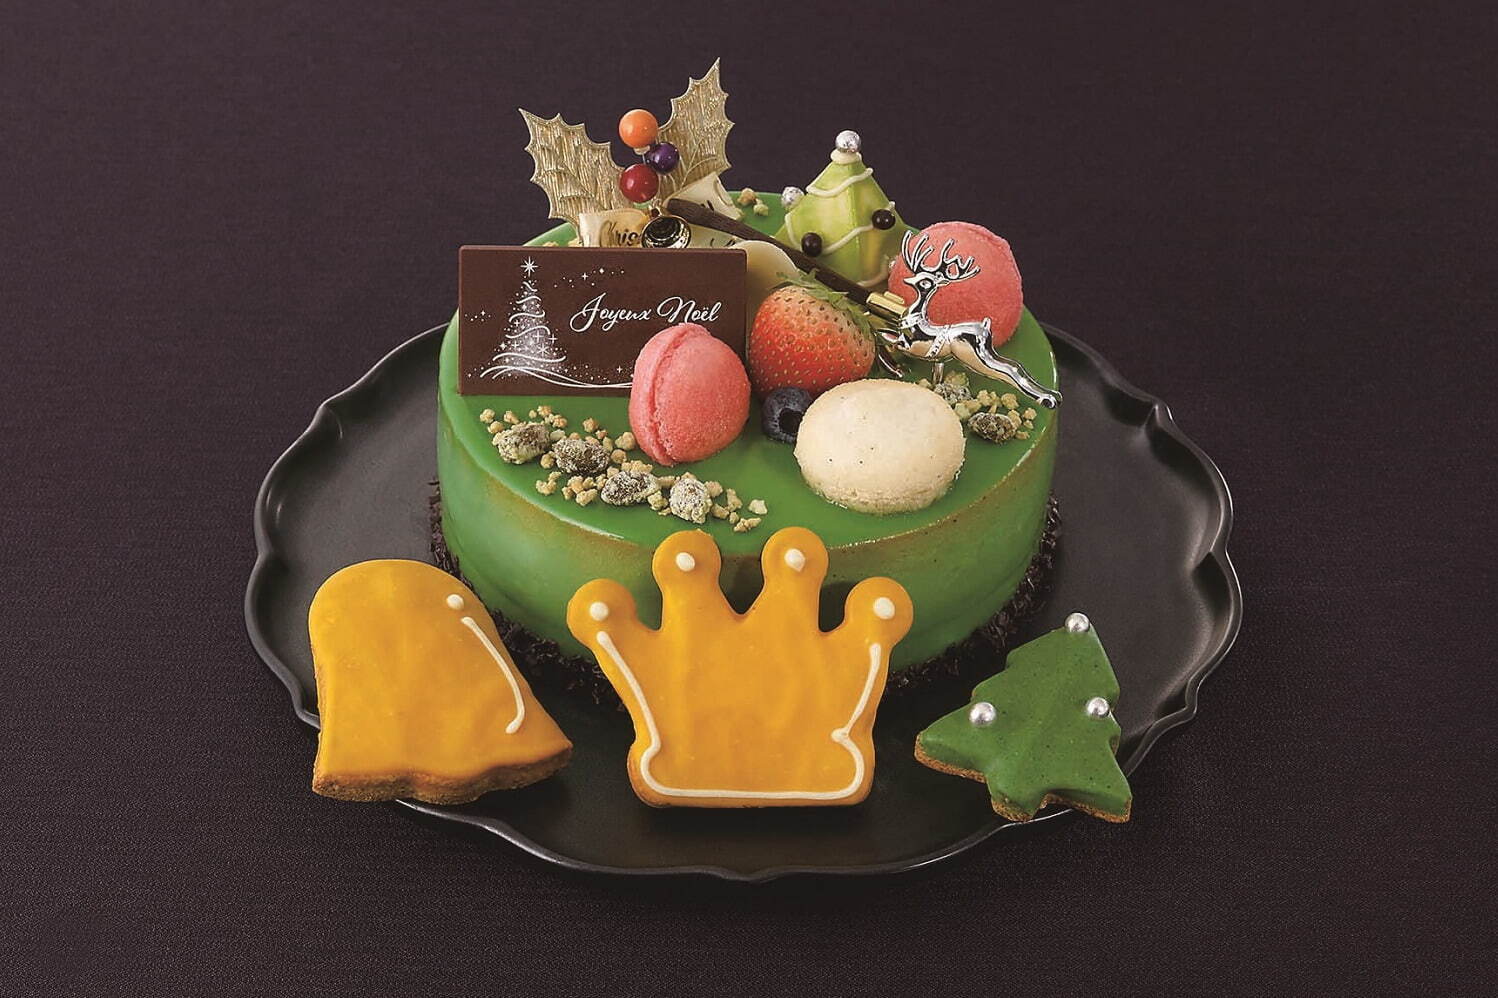 大丸神戸店のクリスマスケーキ2021年、“チョコレートベア”が主役のムースケーキなど｜写真3